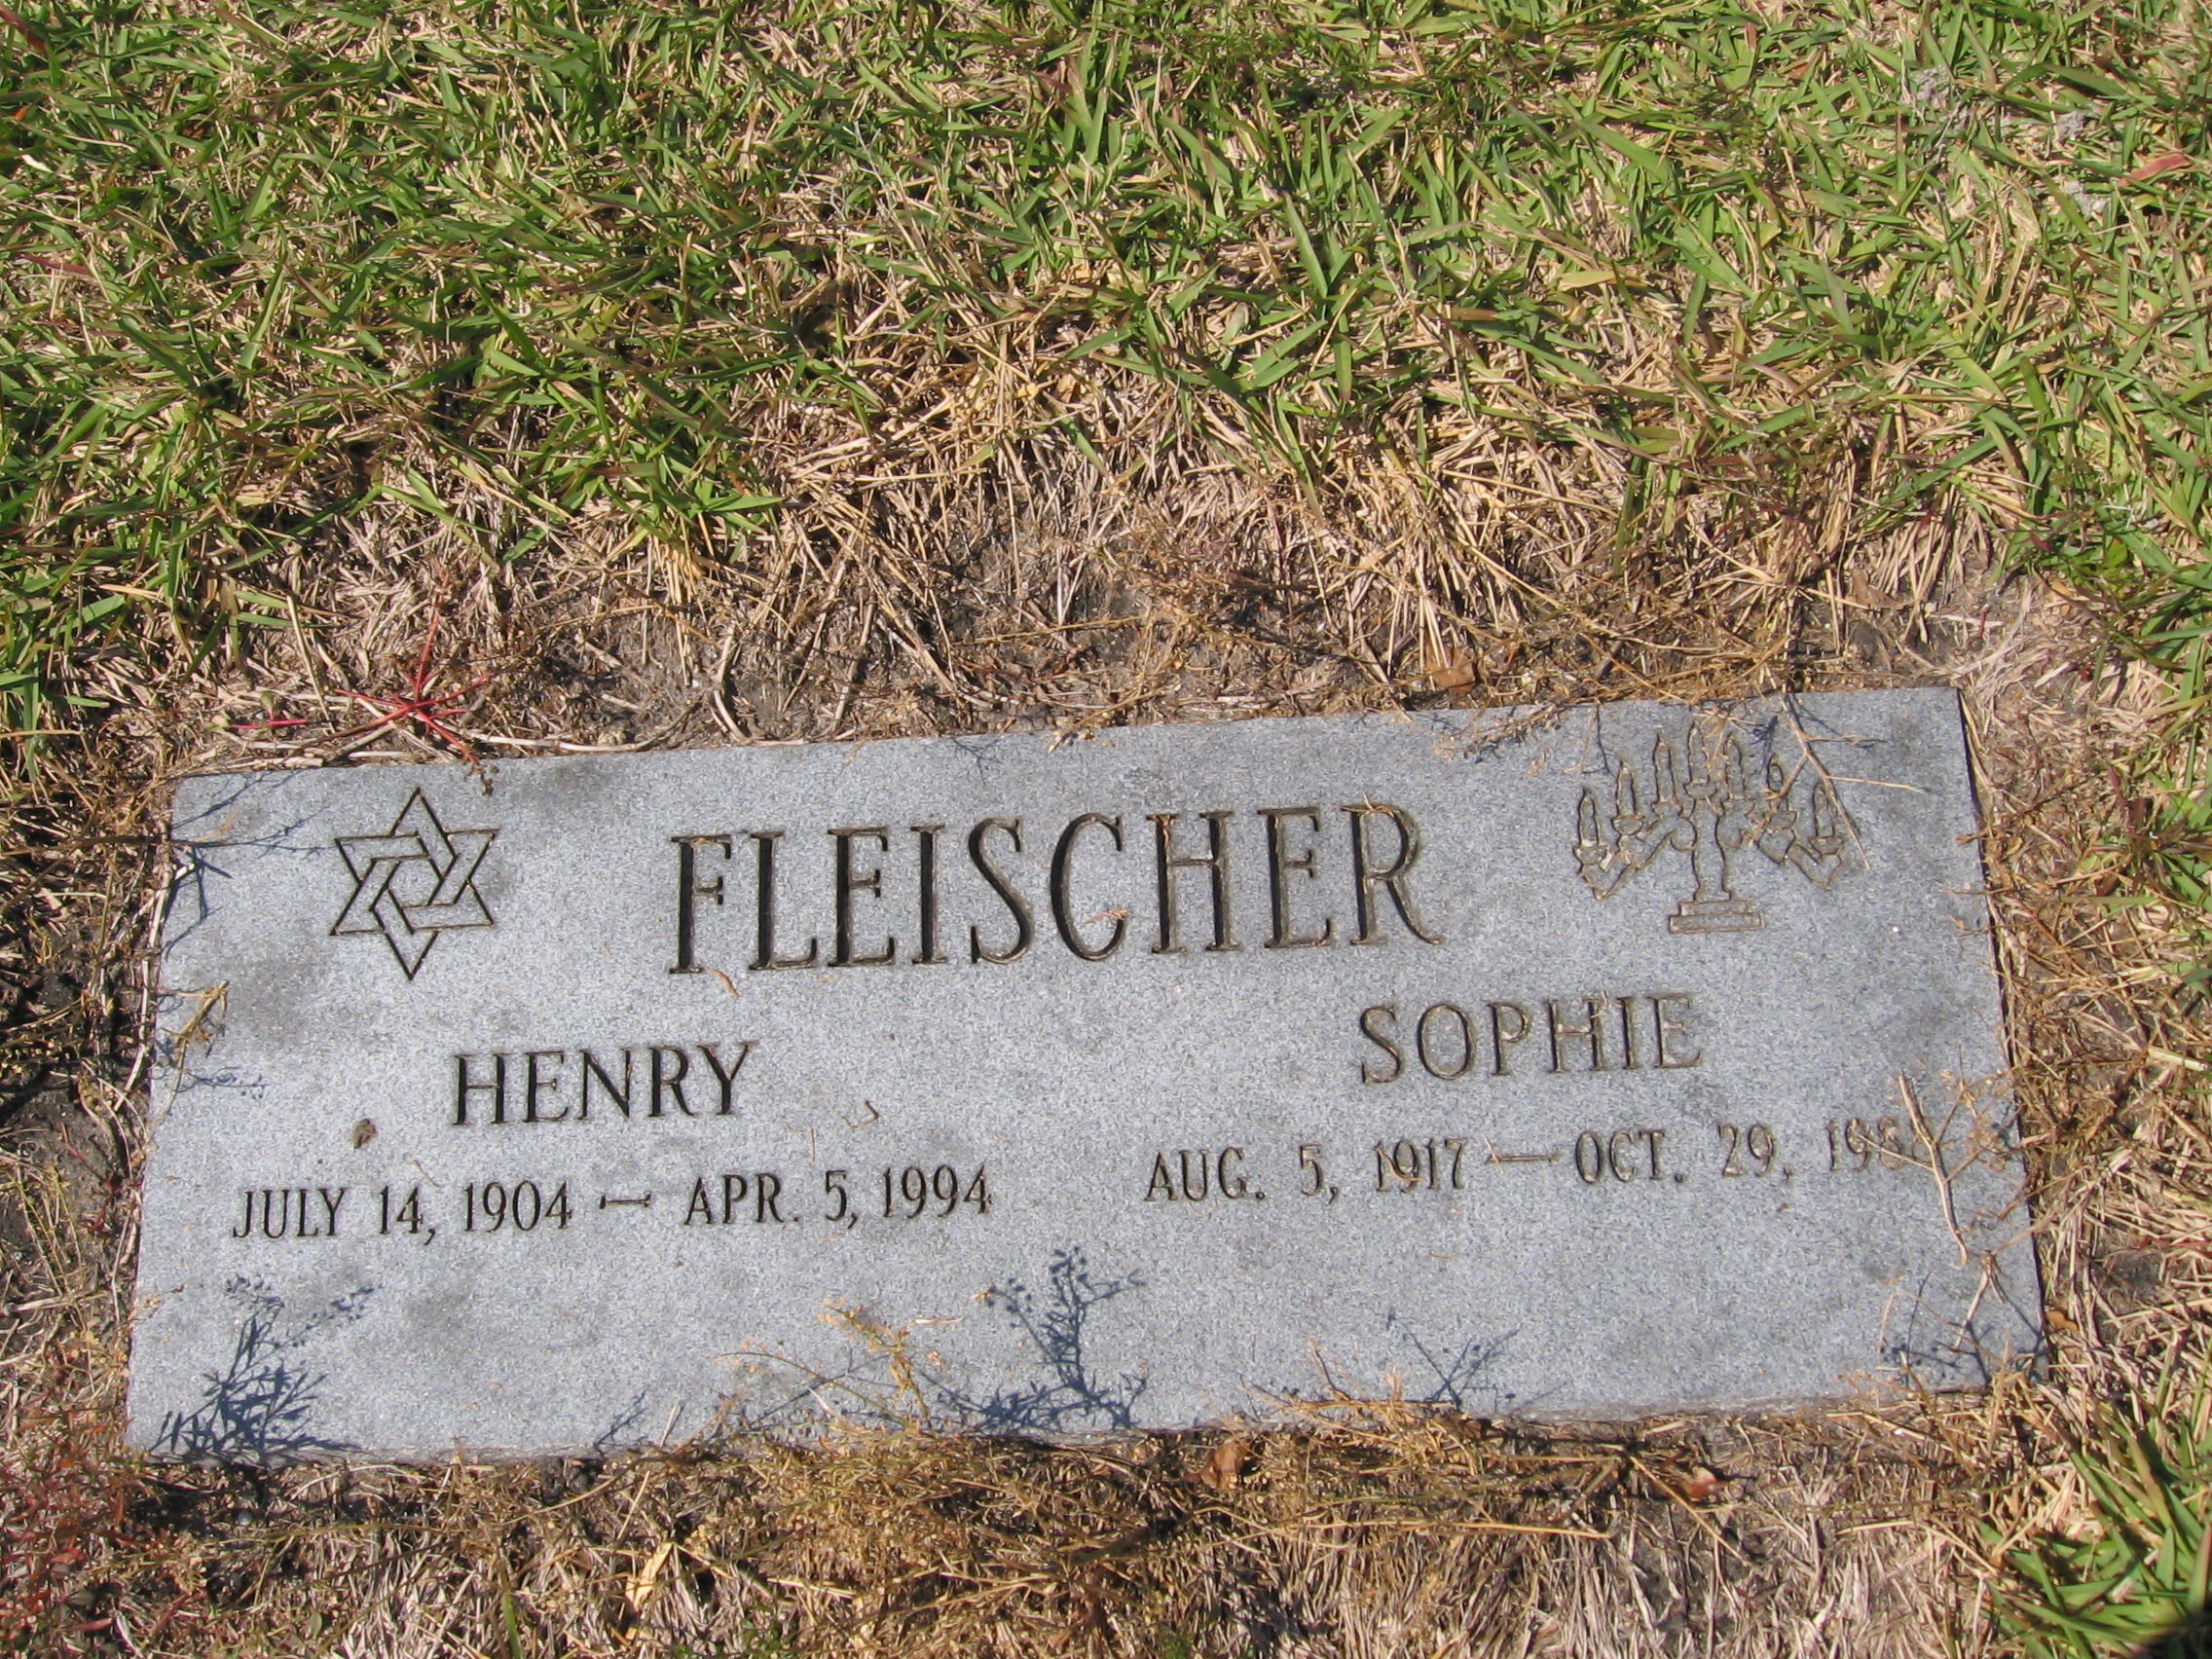 Henry Fleischer